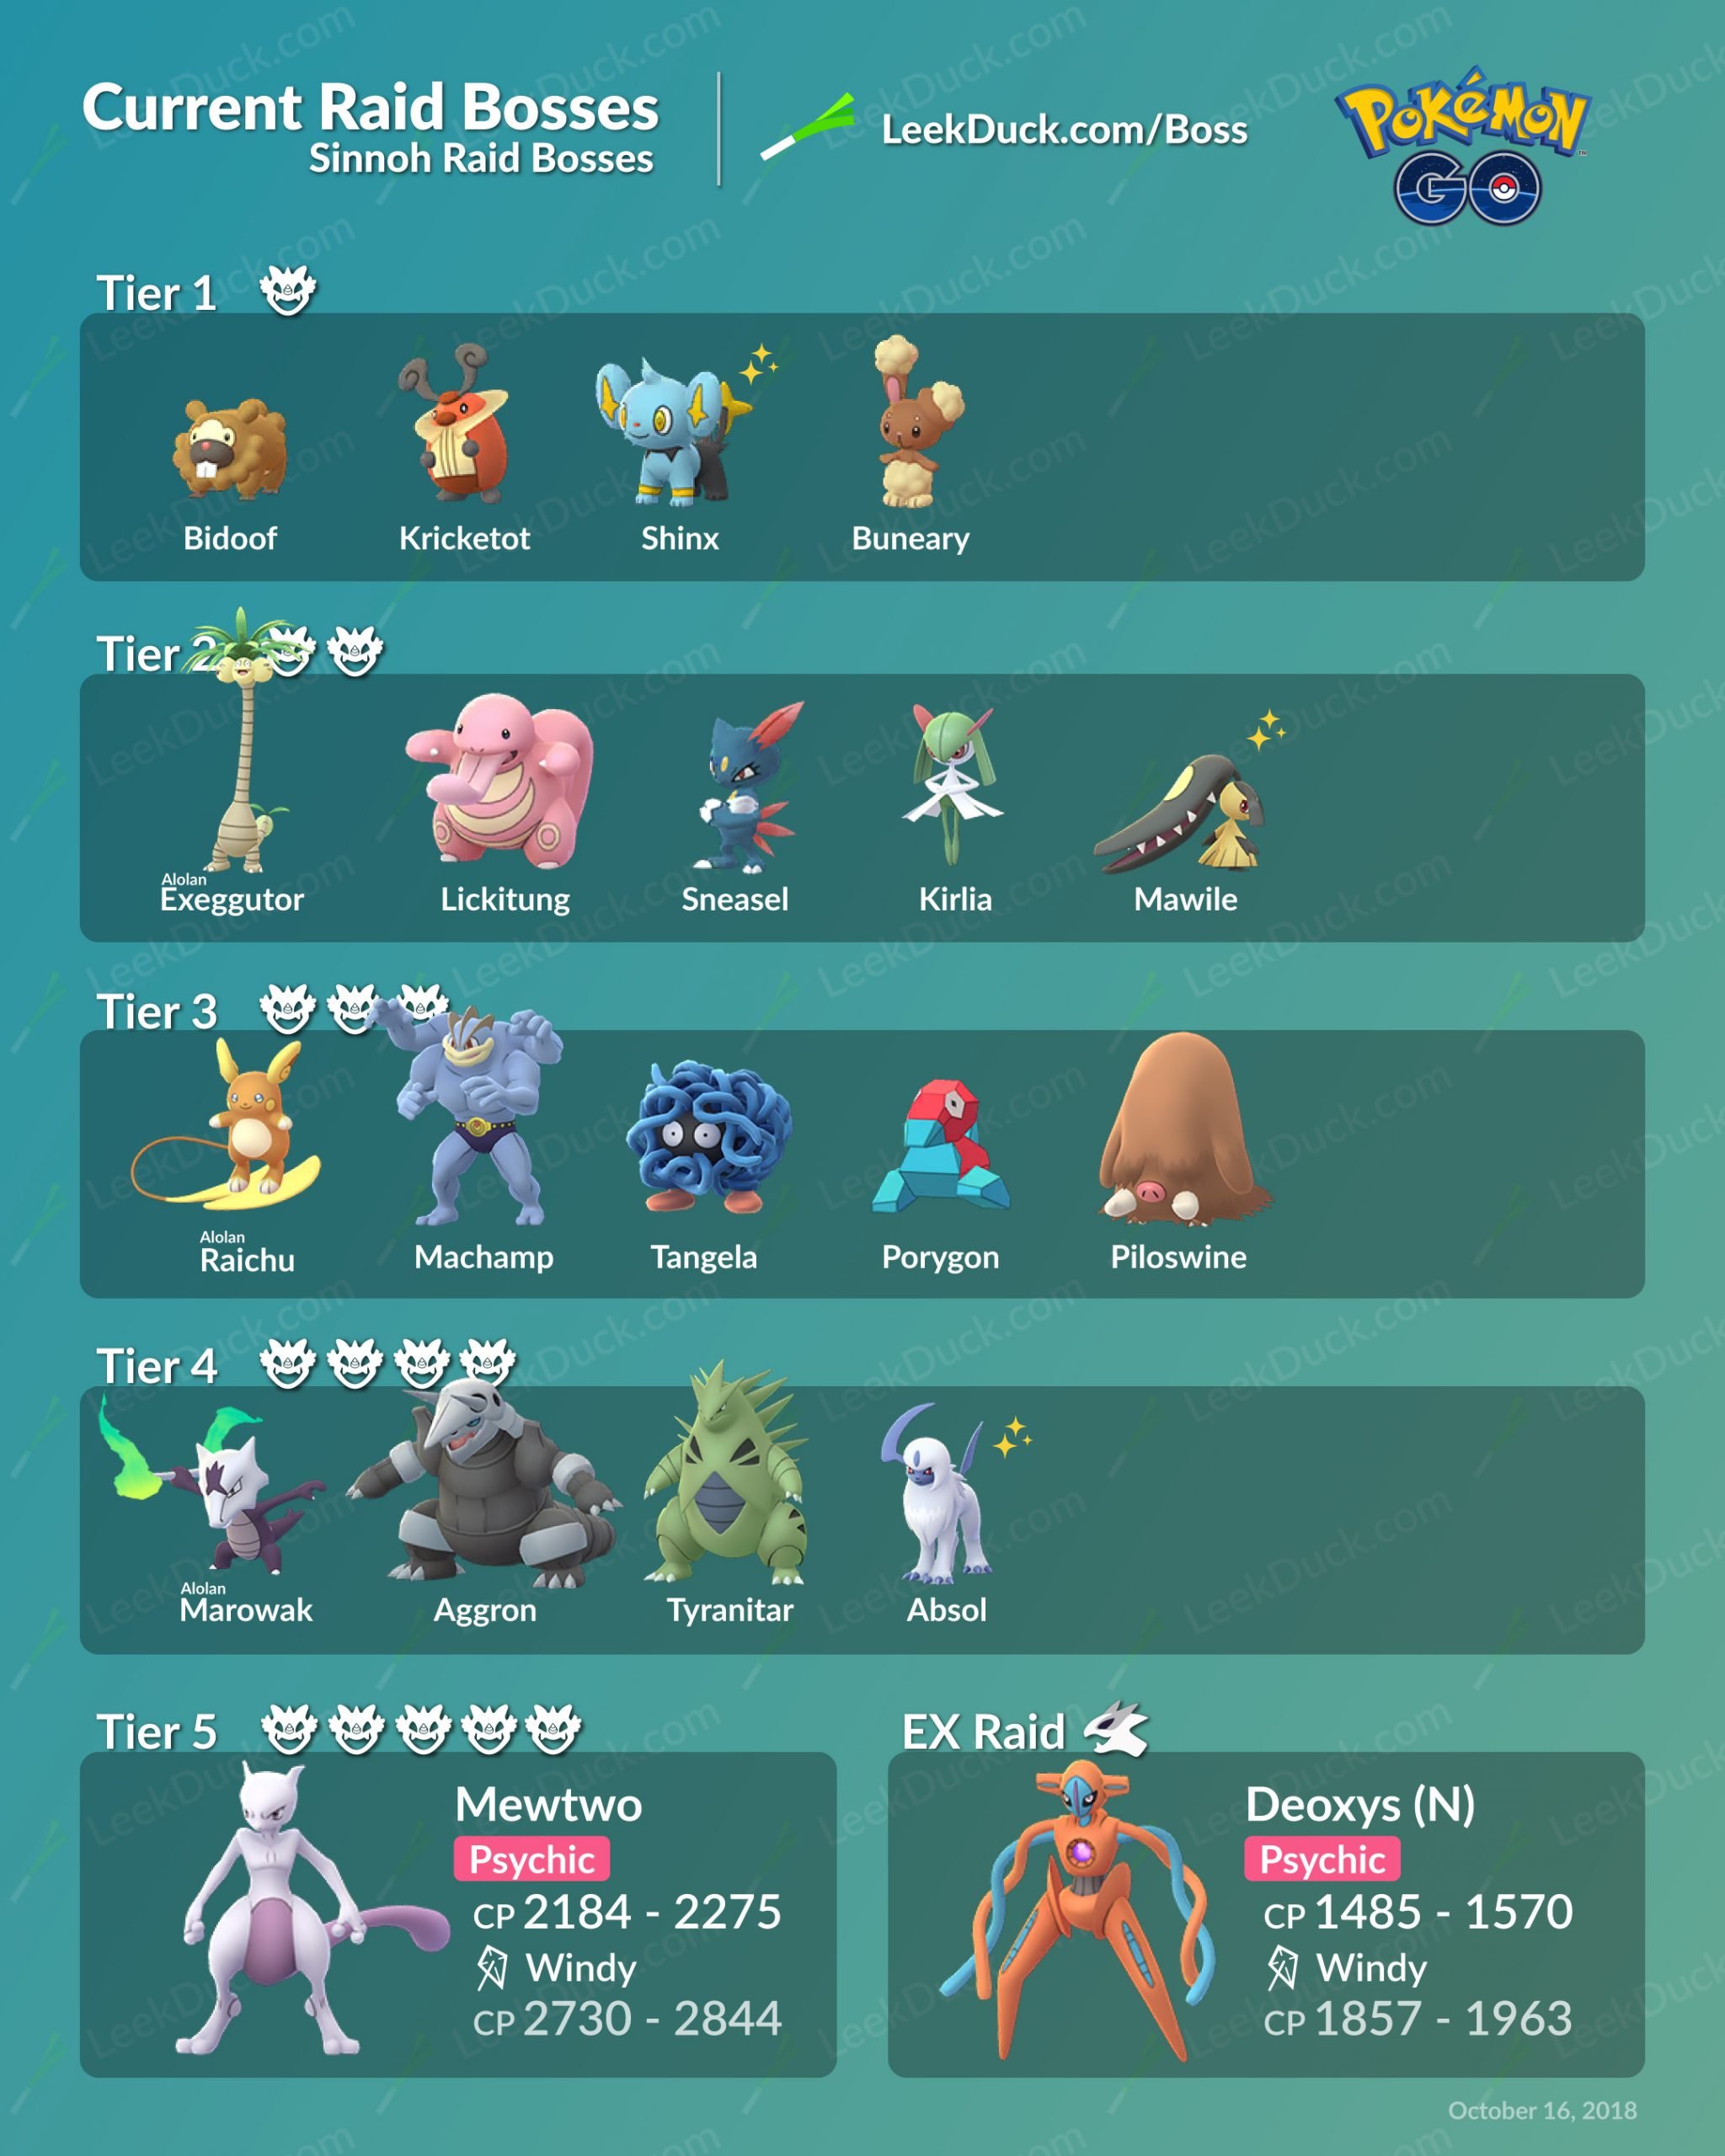 Current Raid Bosses in Pokémon GO